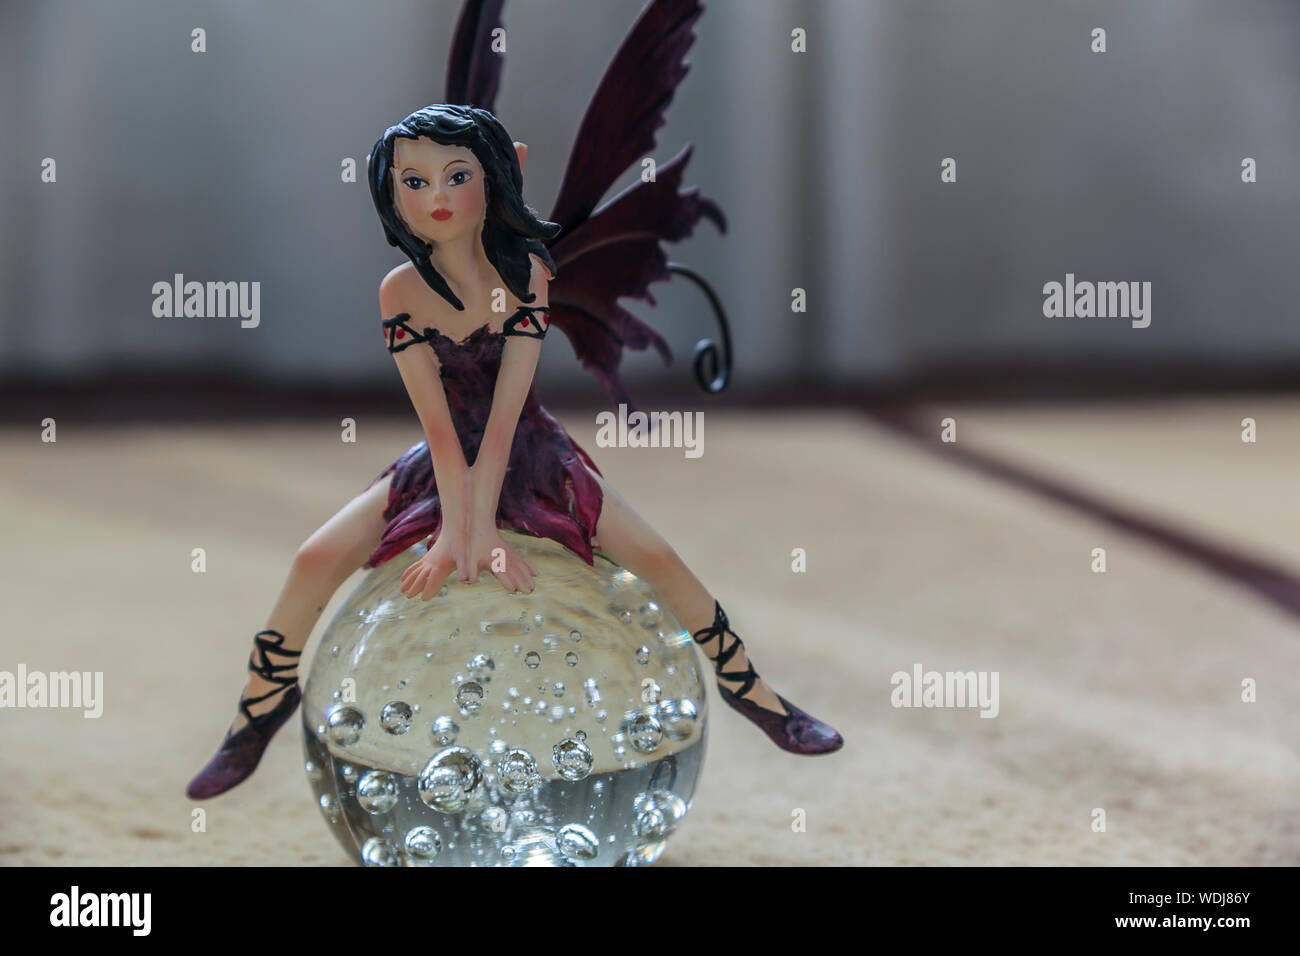 Fata figurina immagini e fotografie stock ad alta risoluzione - Alamy